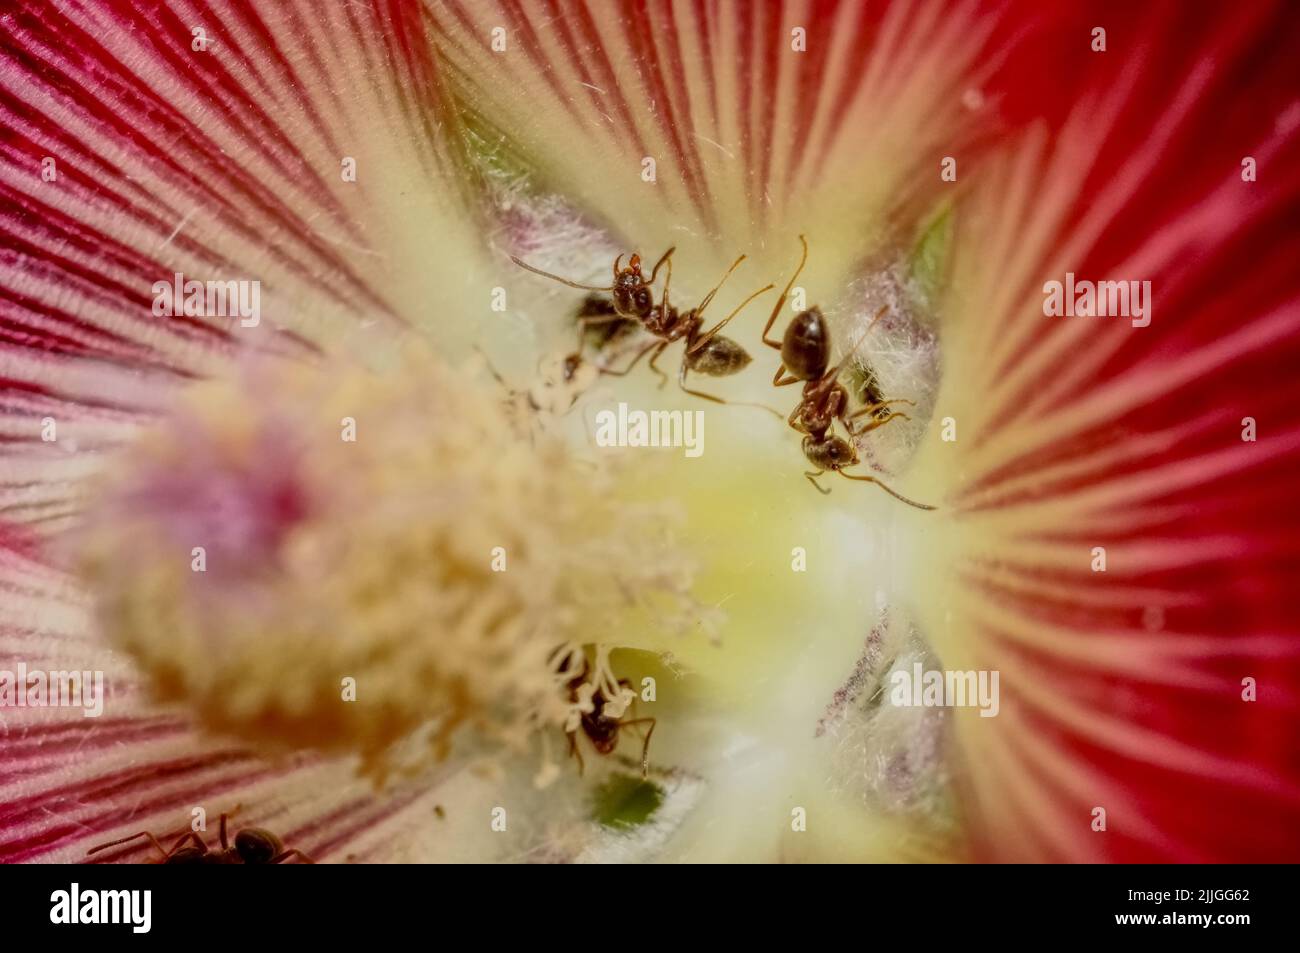 Ameisen sammeln Pollen. Stock Photo